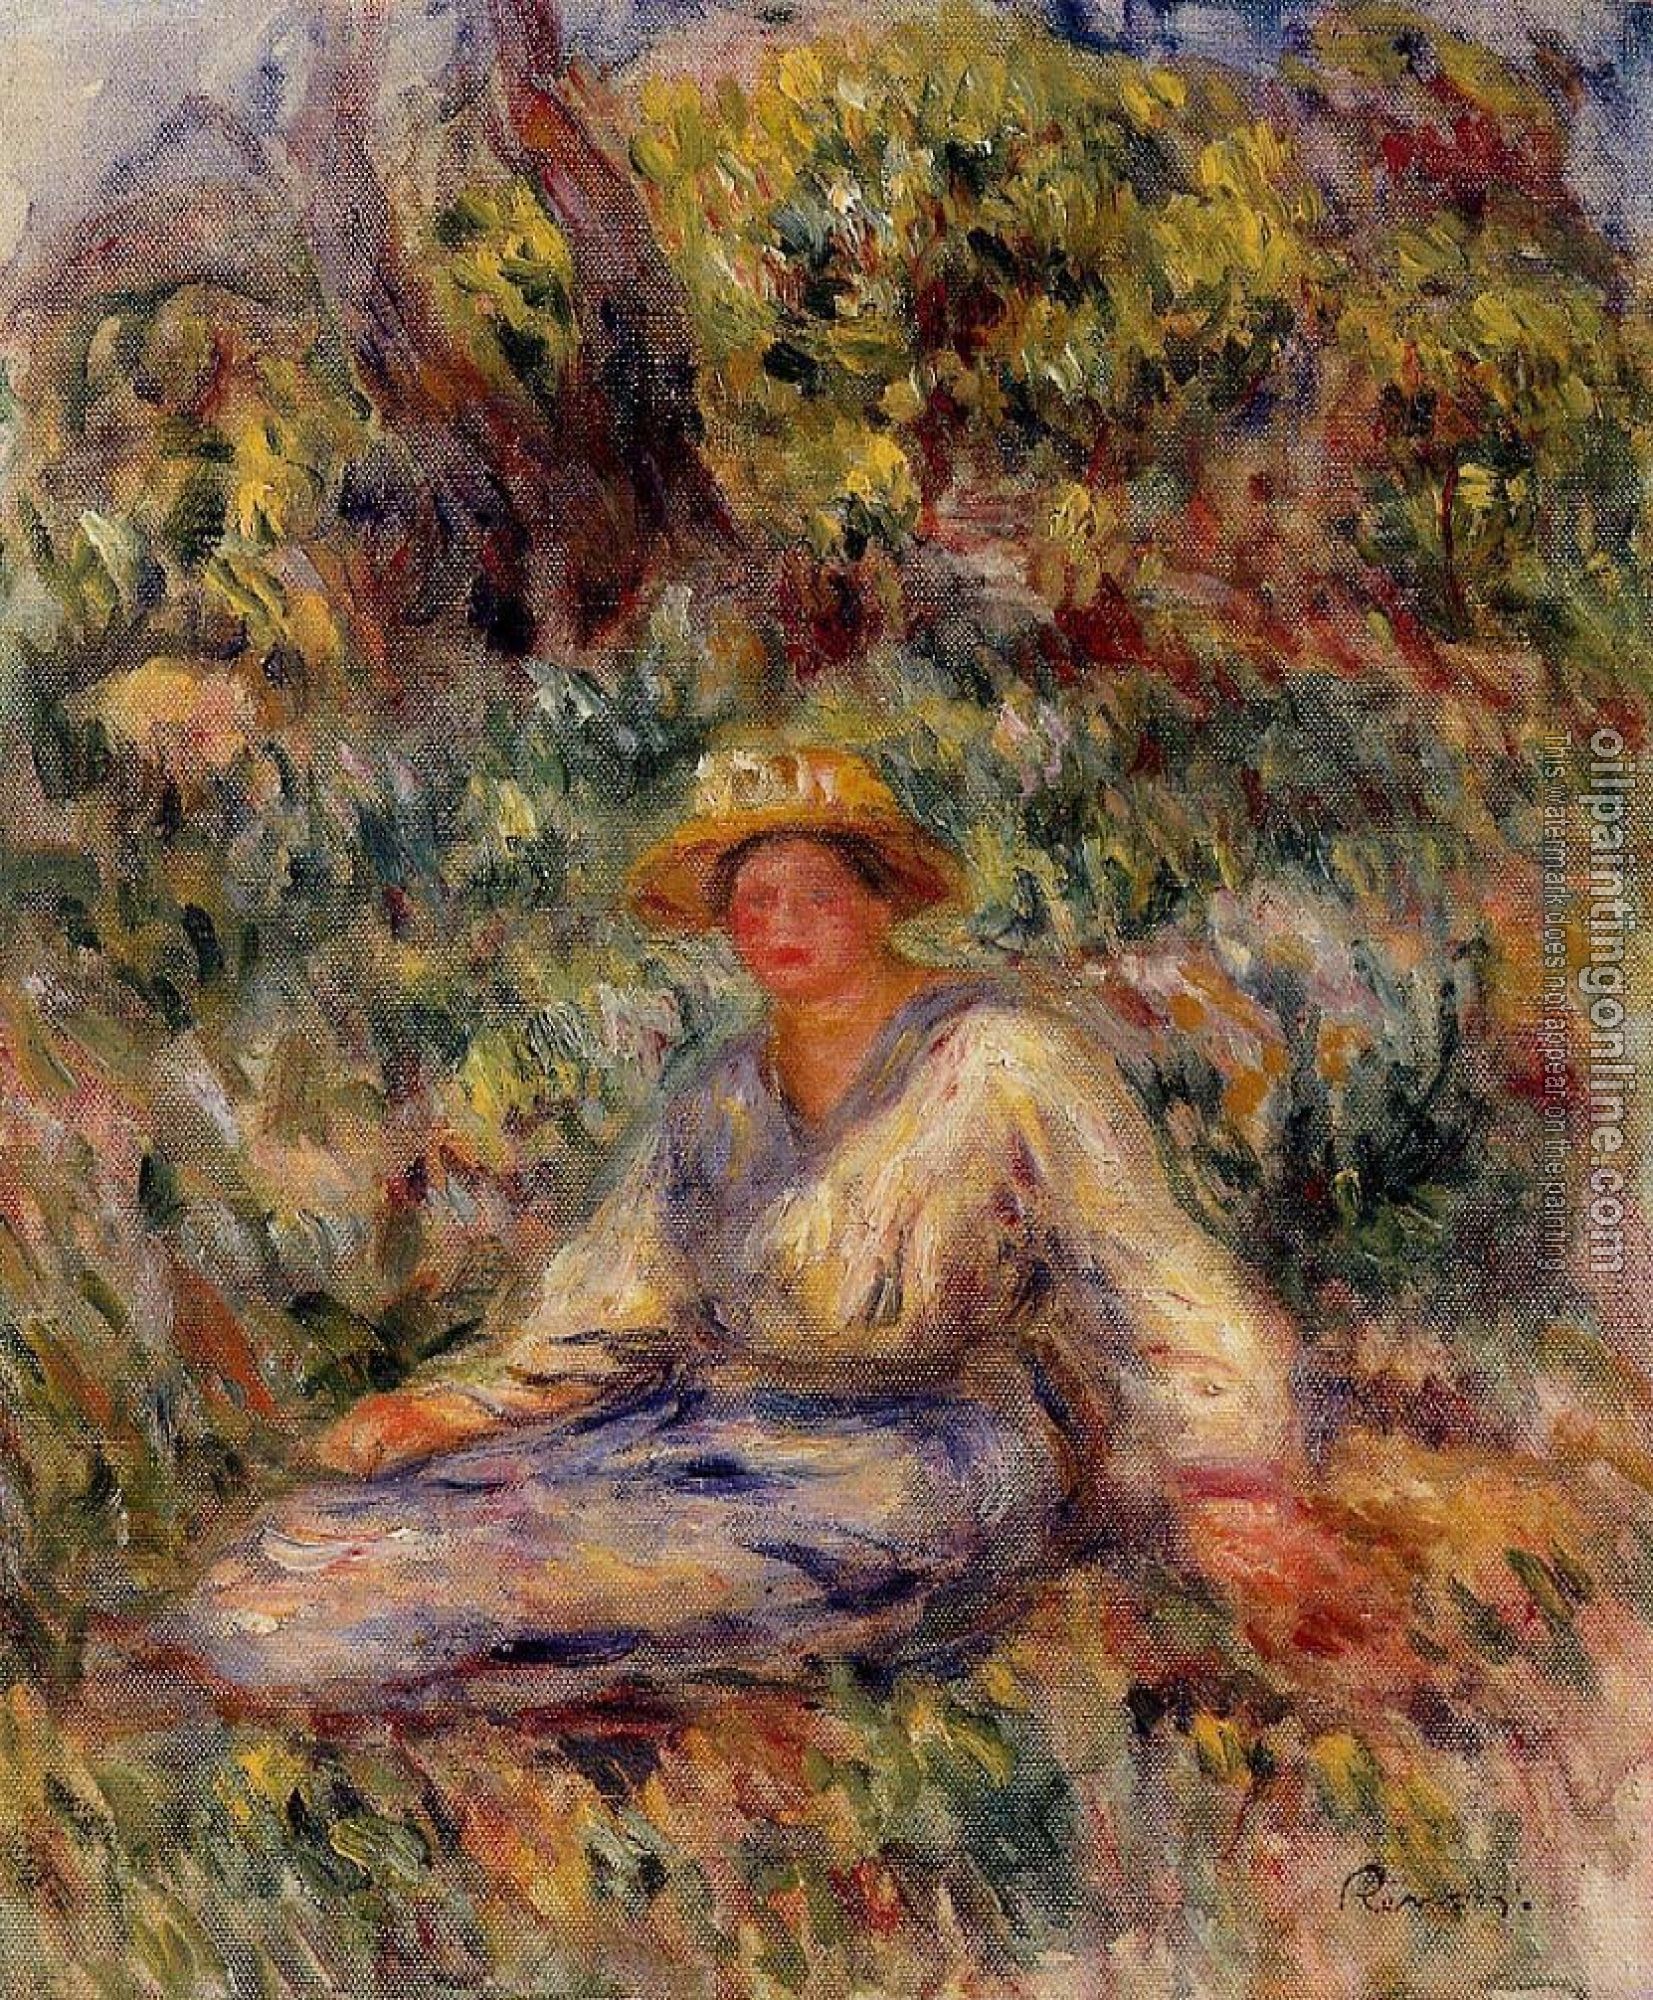 Renoir, Pierre Auguste - Woman in Blue in a Landscape